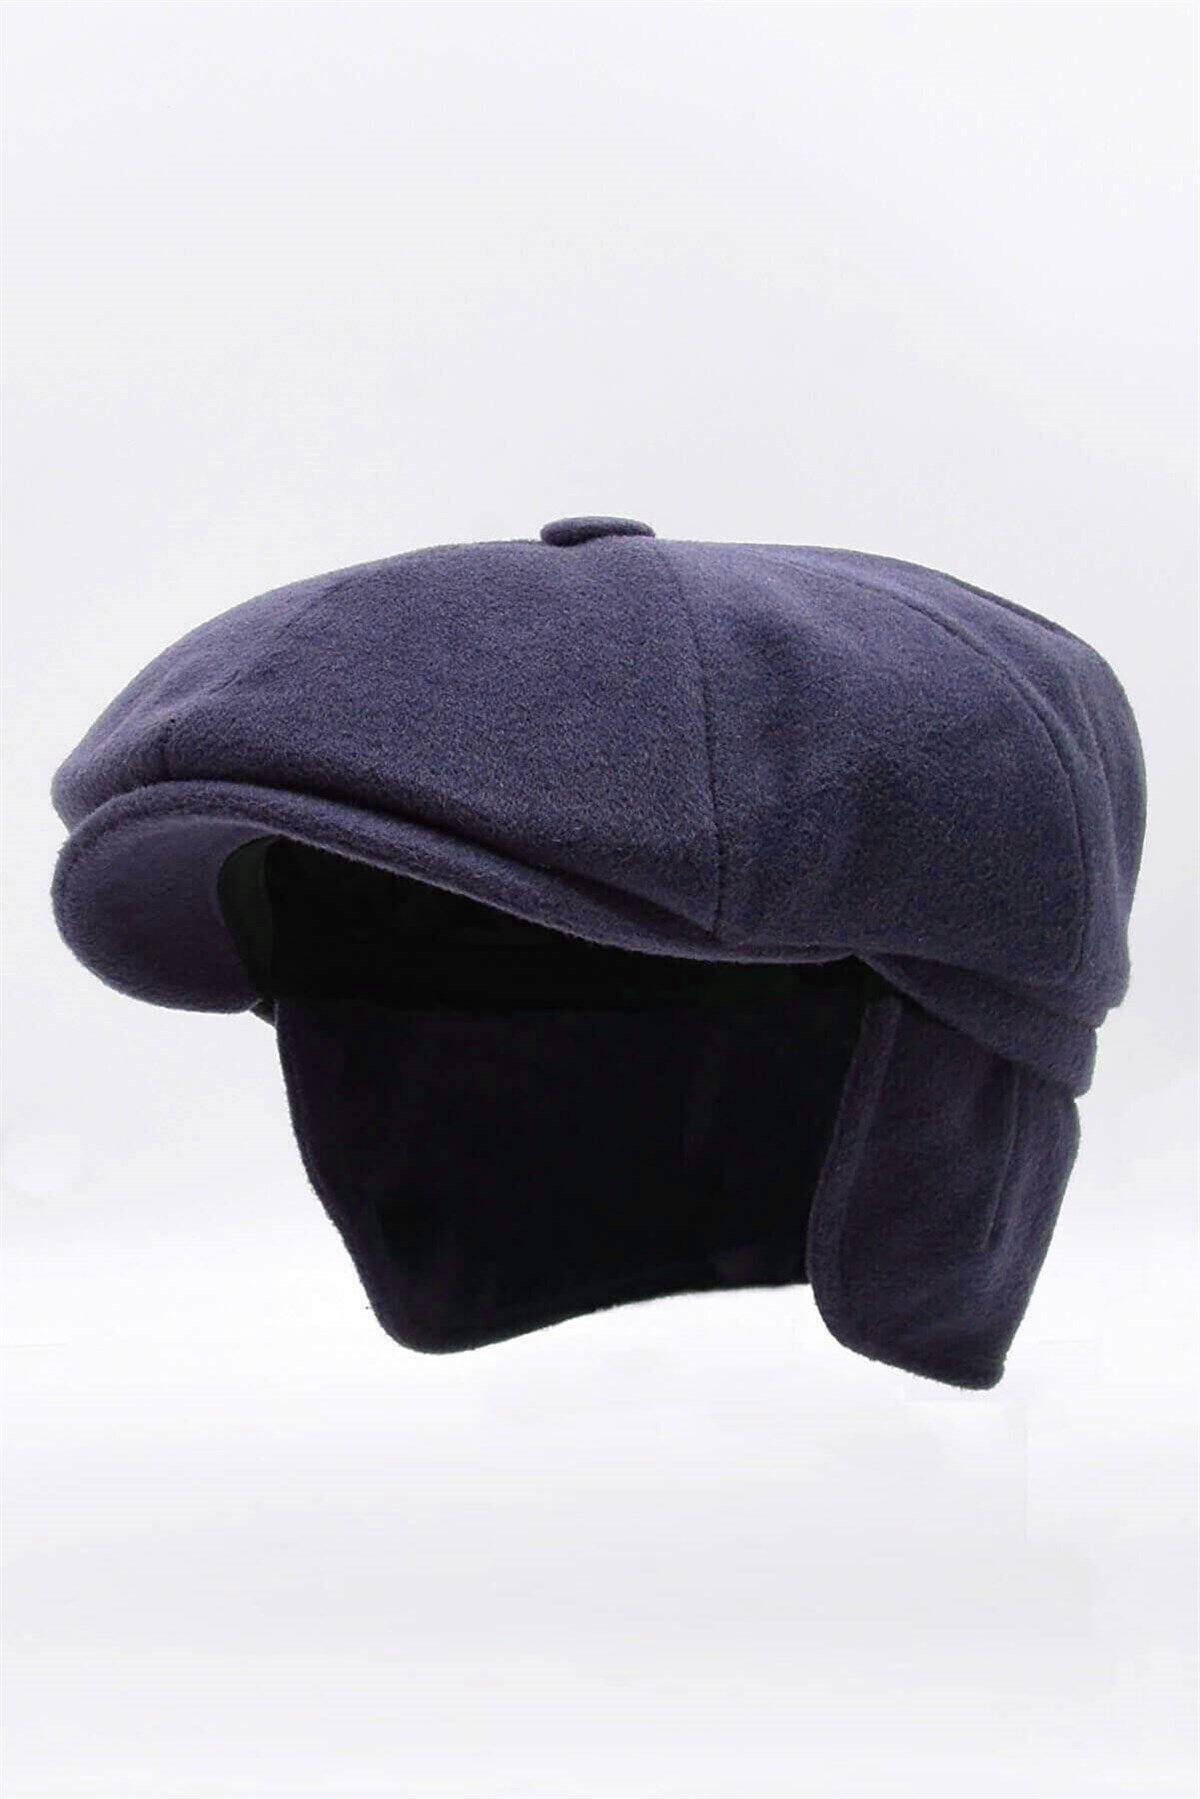 Külah Erkek %100 Kaşmir Yün Kışlık Kasket Kulaklı Şapka-Lacivert KLH7051